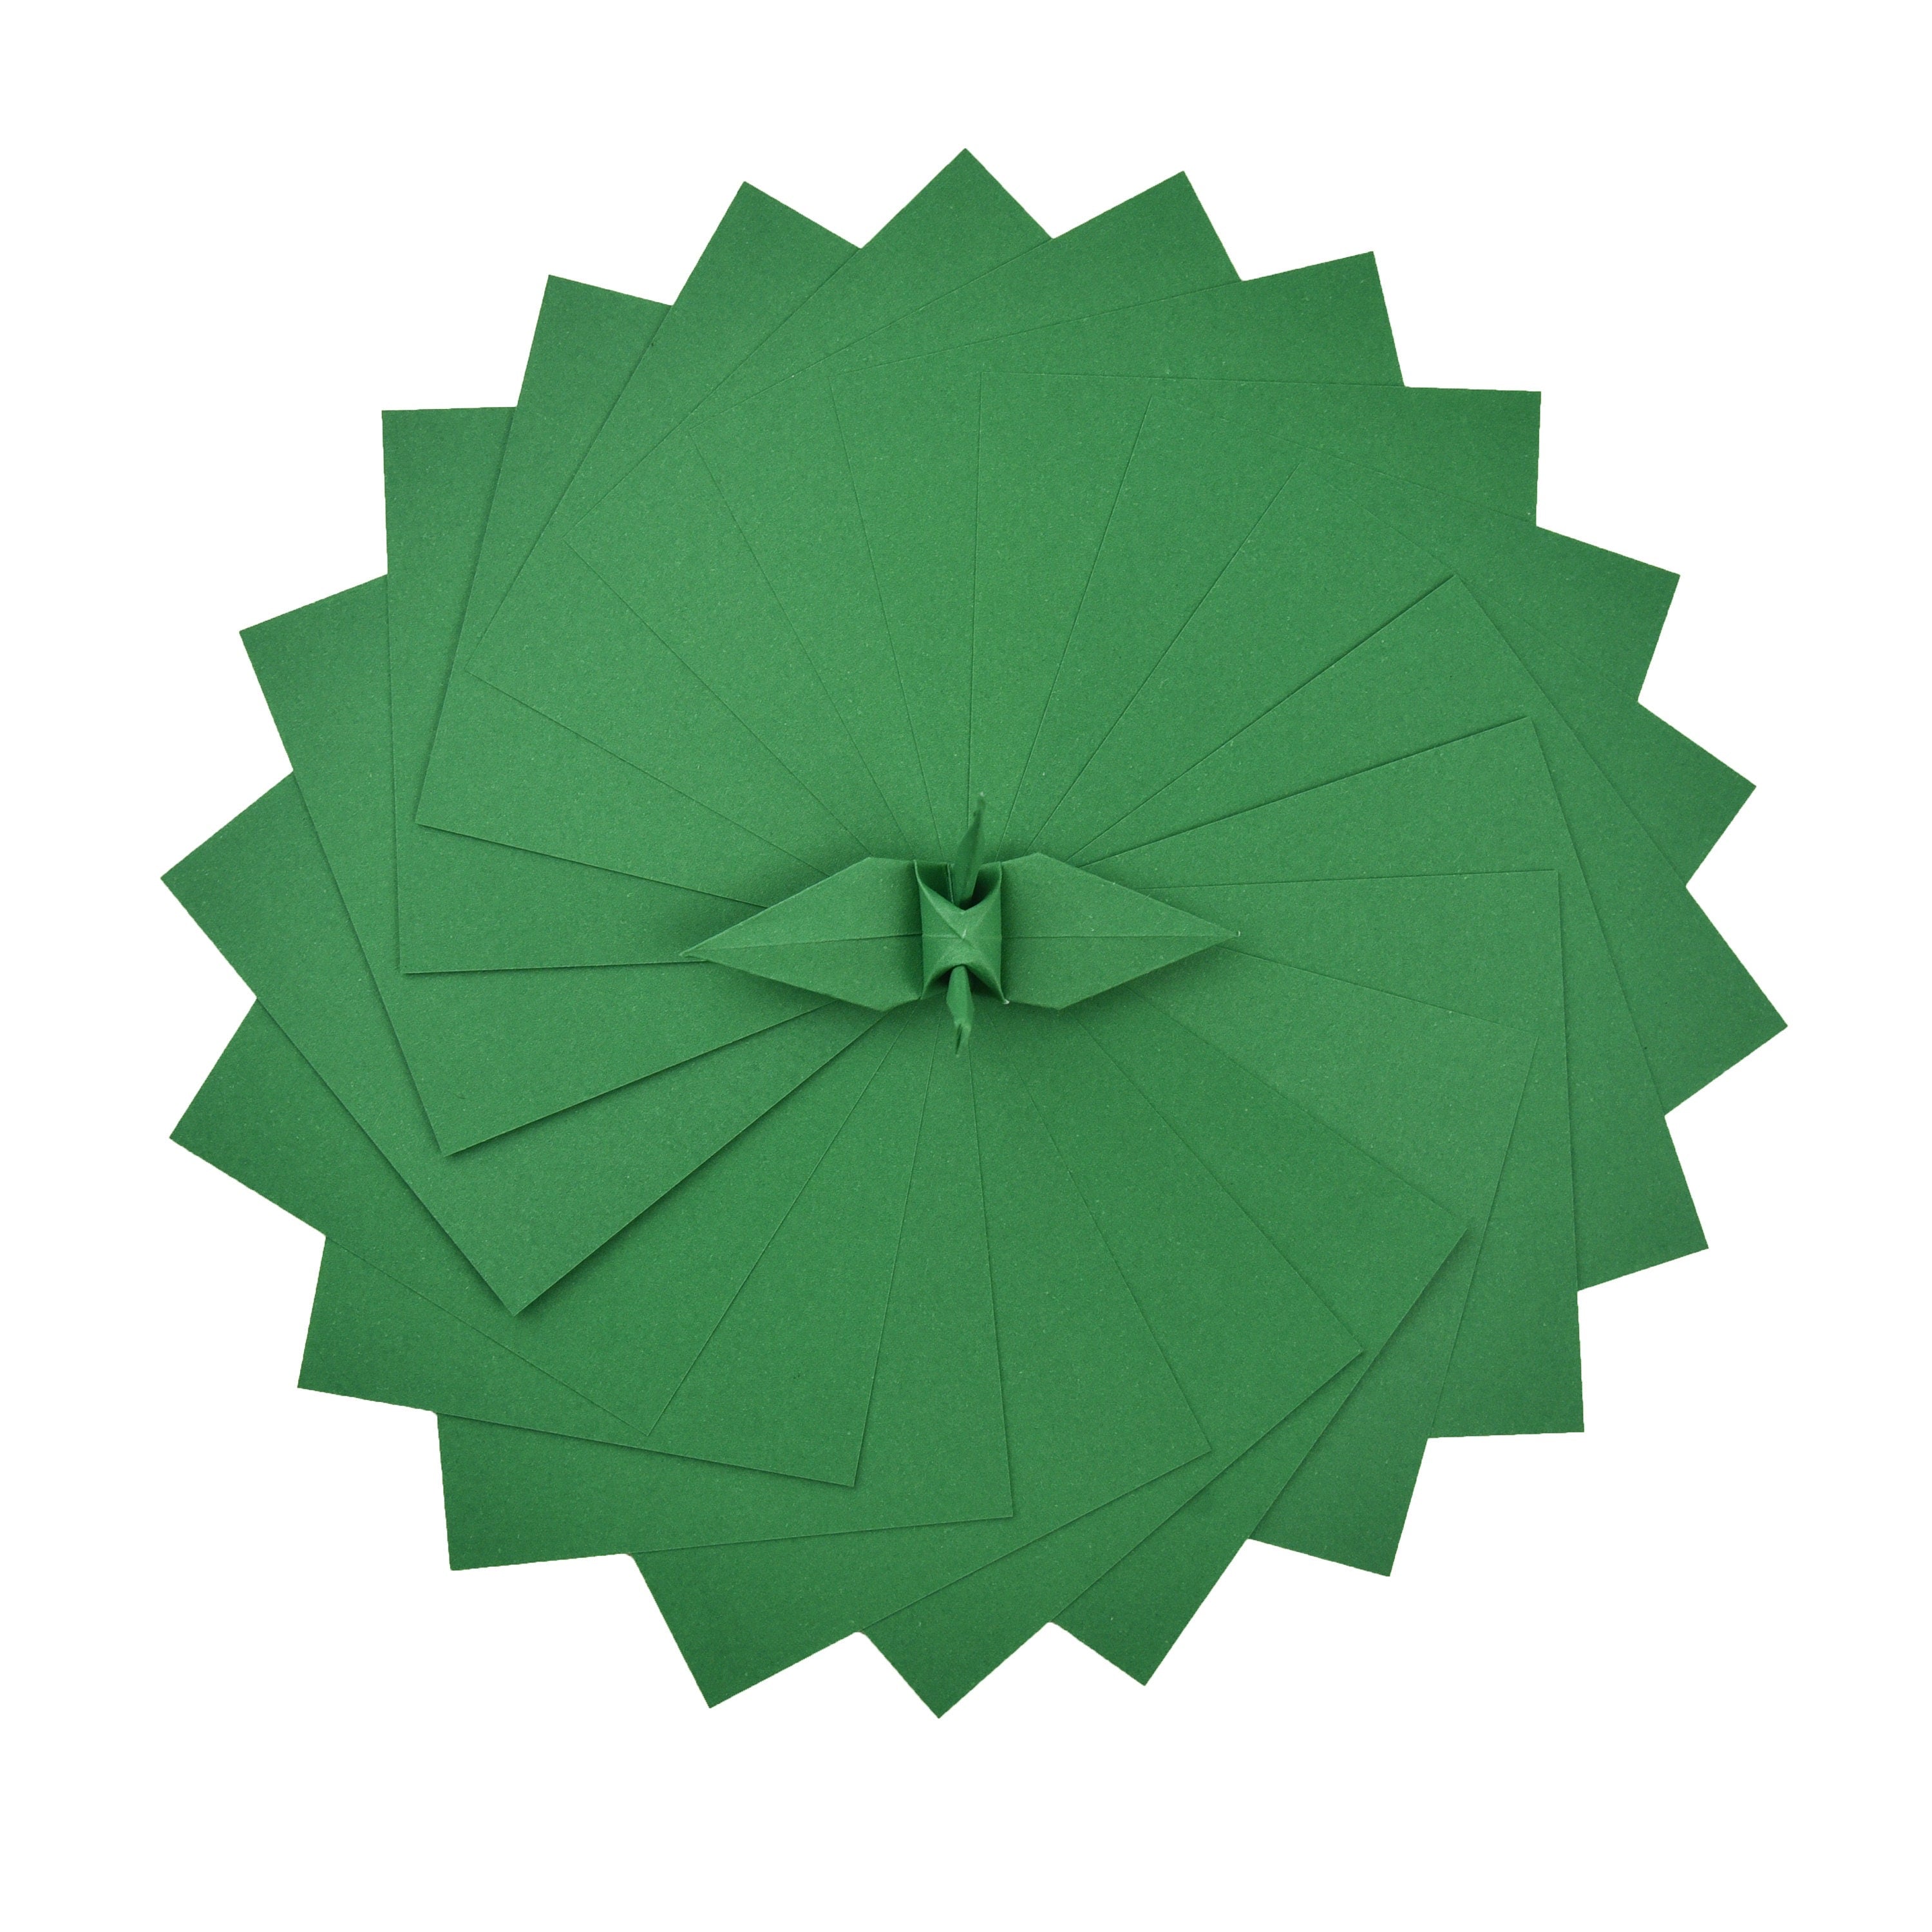 100 hojas de papel GreenOrigami - 6x6 pulgadas - Paquete de papel cuadrado para plegado, grullas de origami y decoración - S24